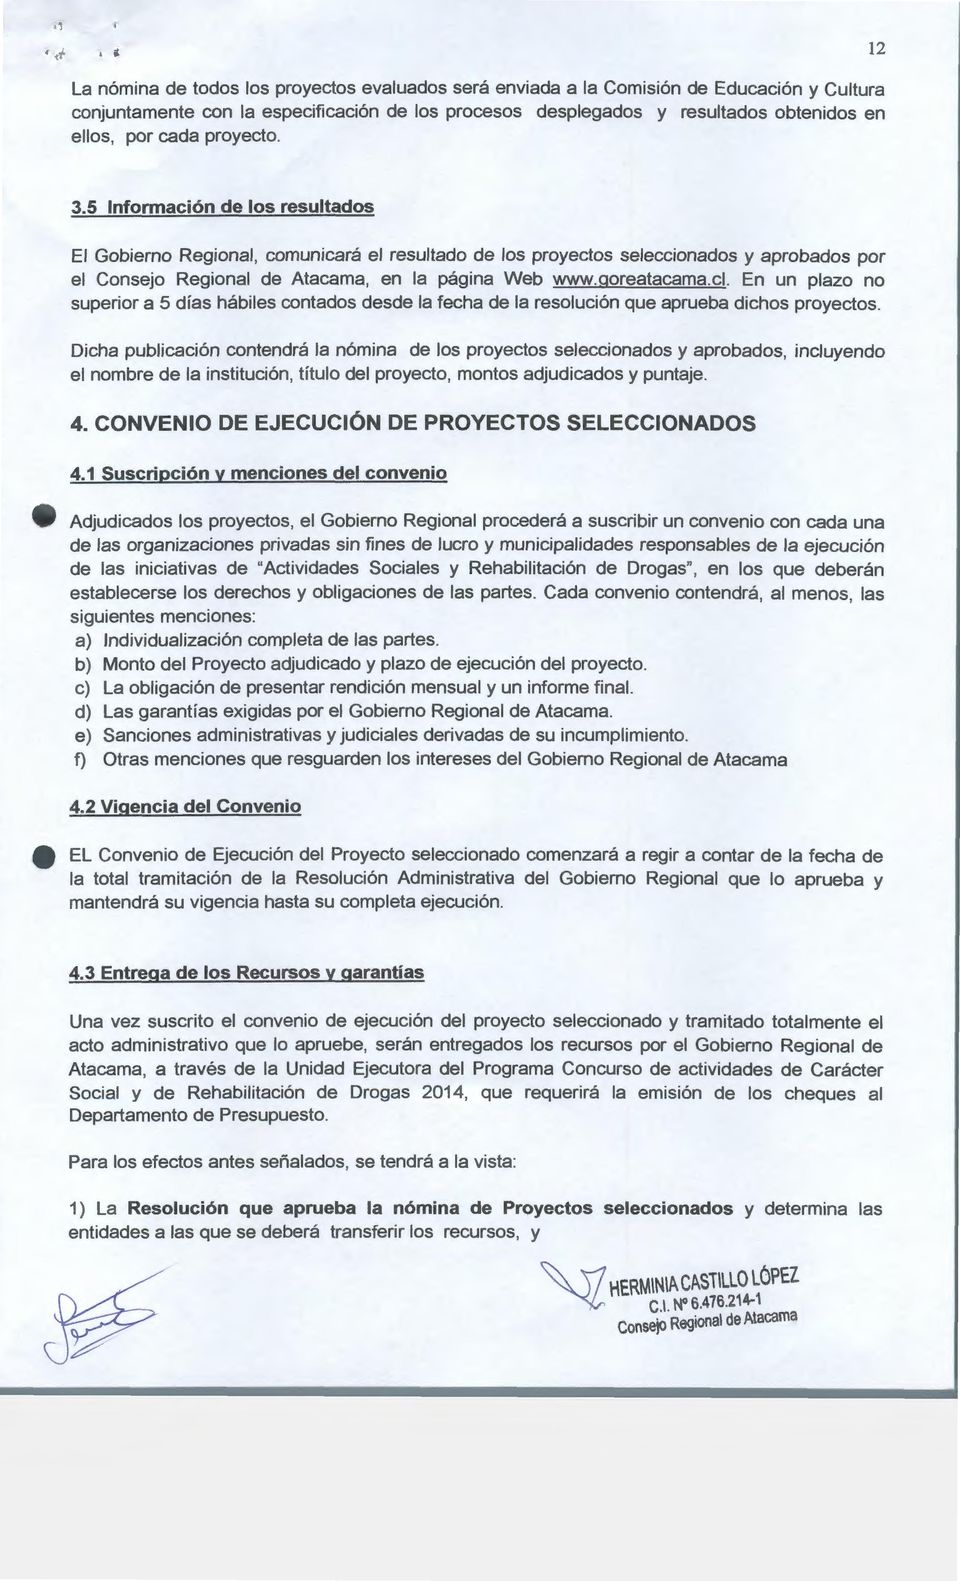 5 Información de los resultados El Gobierno Regional, comunicará el resultado de los proyectos seleccionados y aprobados por el Consejo Regional de Atacama, en la página Web www.goreatacama.cl.